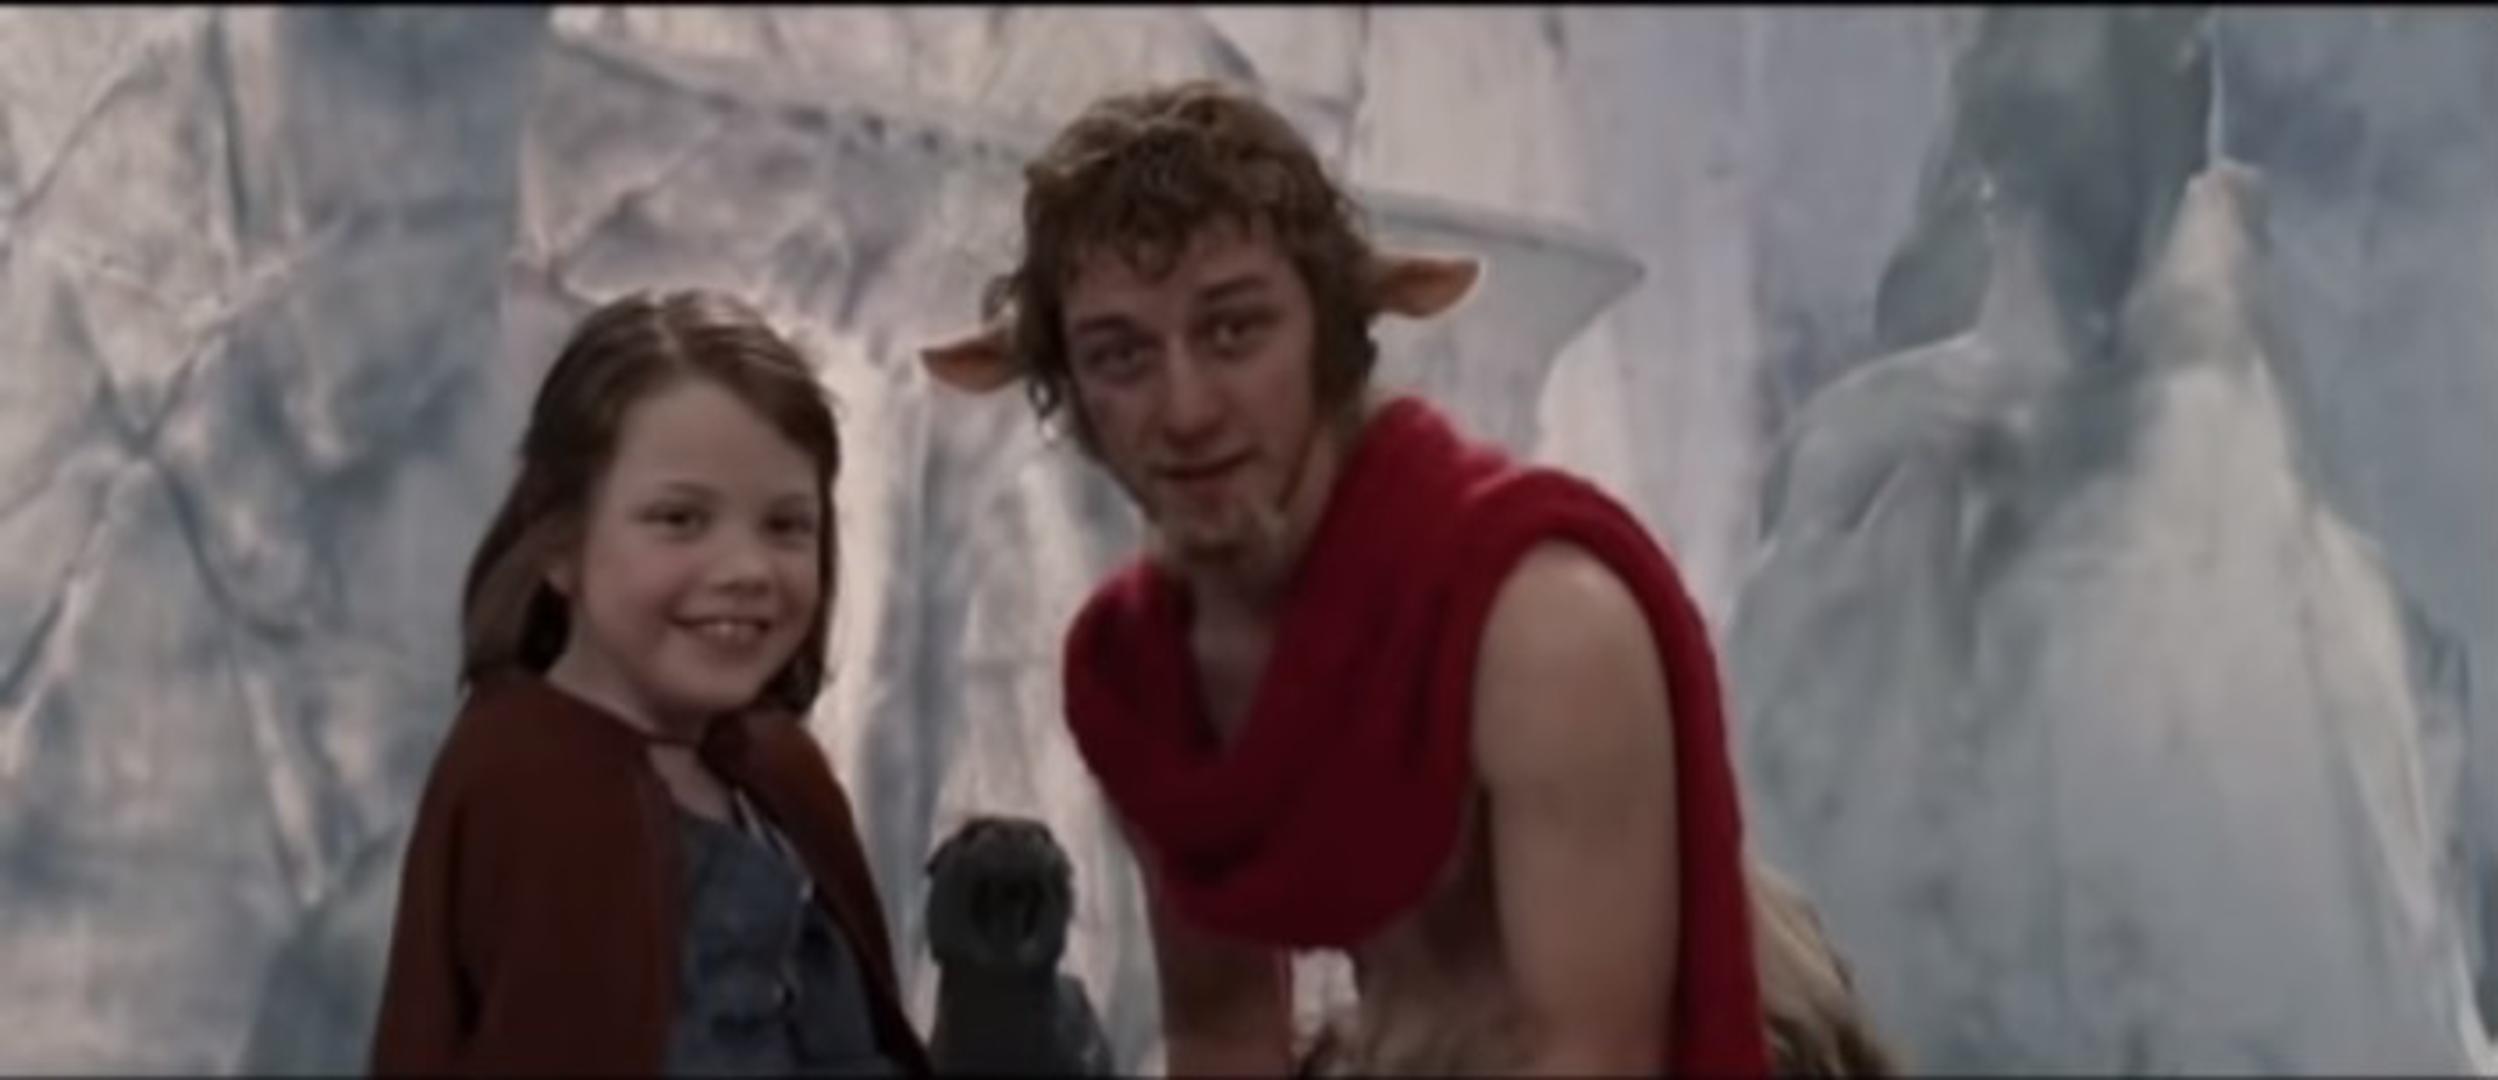 U jednom od najljepših filmova za djecu "Kronike iz Narnije"  upečatljivu ulogu je imao i glumac James McAvoy kojeg smo gledali u ulozi Tumnusa.